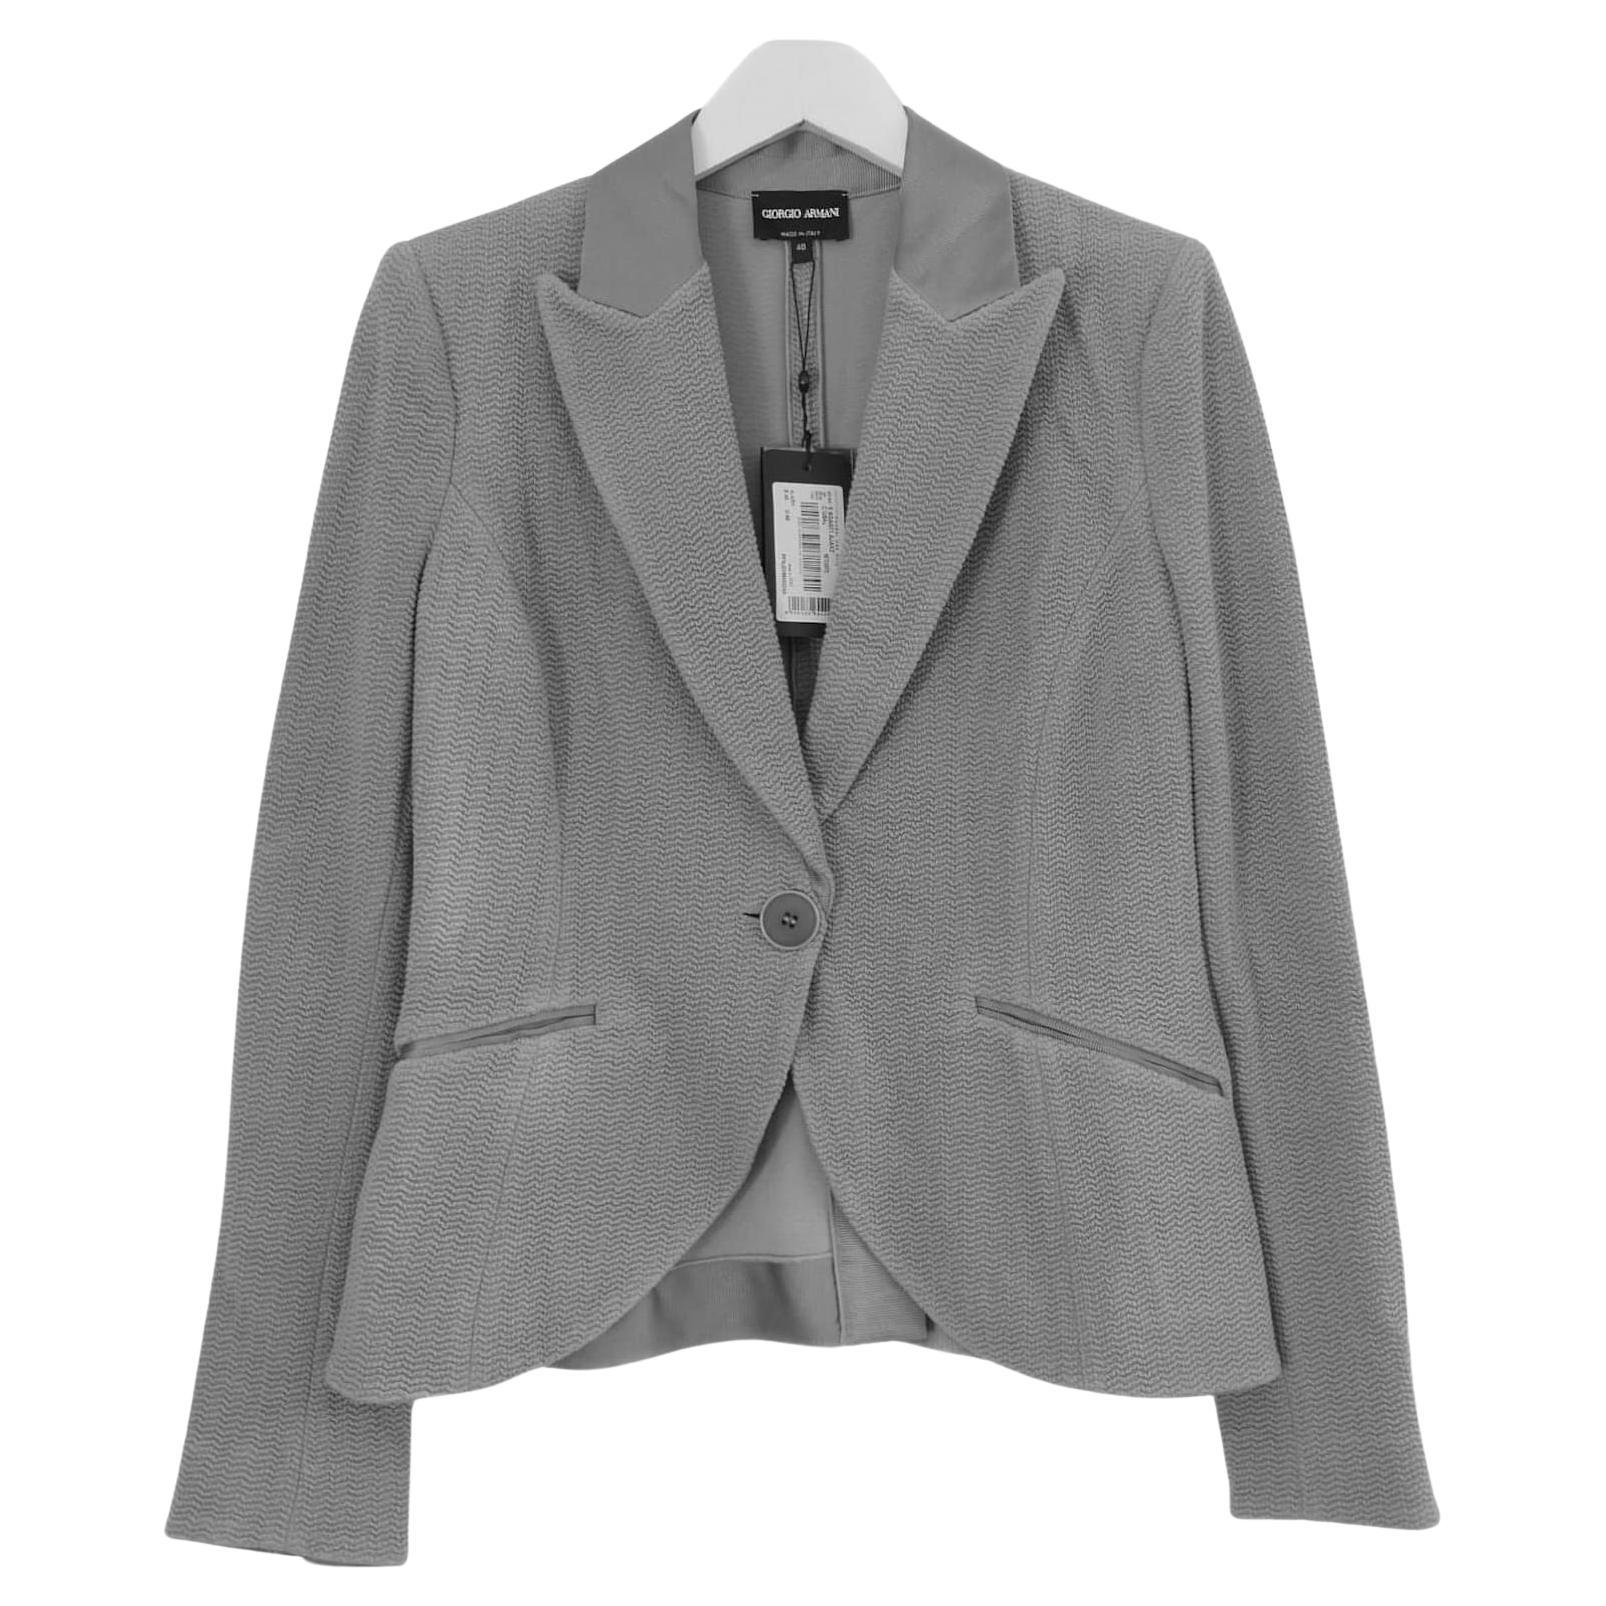 Giorgio Armani Grey Textured Blazer Jacket For Sale